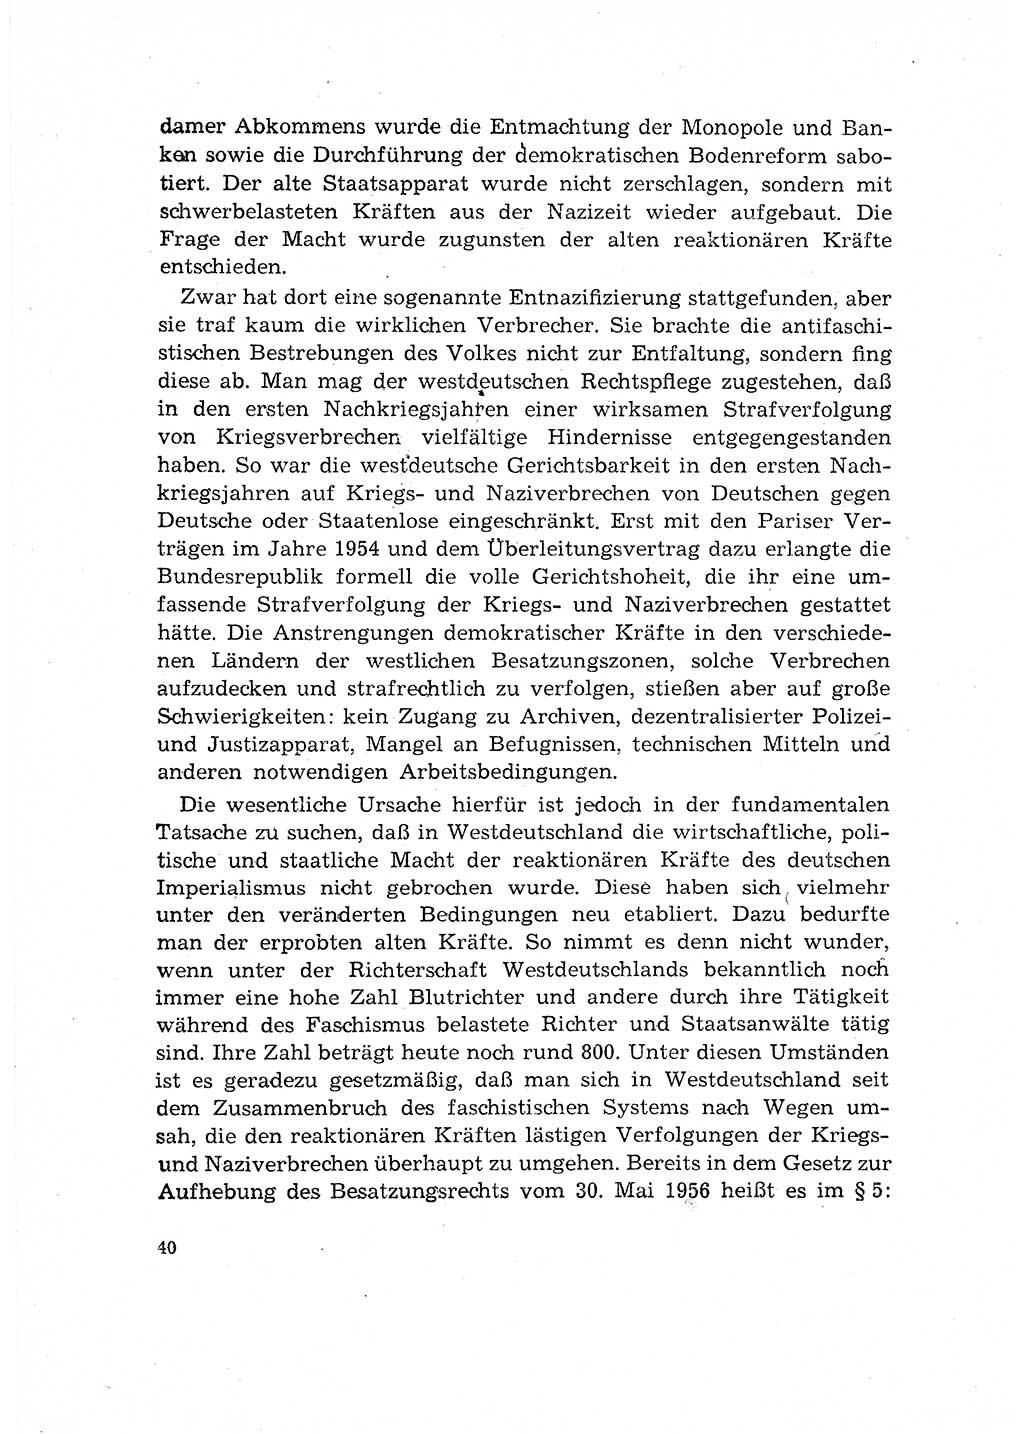 Bestrafung der Nazi- und Kriegsverbrecher [Deutsche Demokratische Republik (DDR)] 1964, Seite 40 (Bestr. Nazi-Kr.-Verbr. DDR 1964, S. 40)